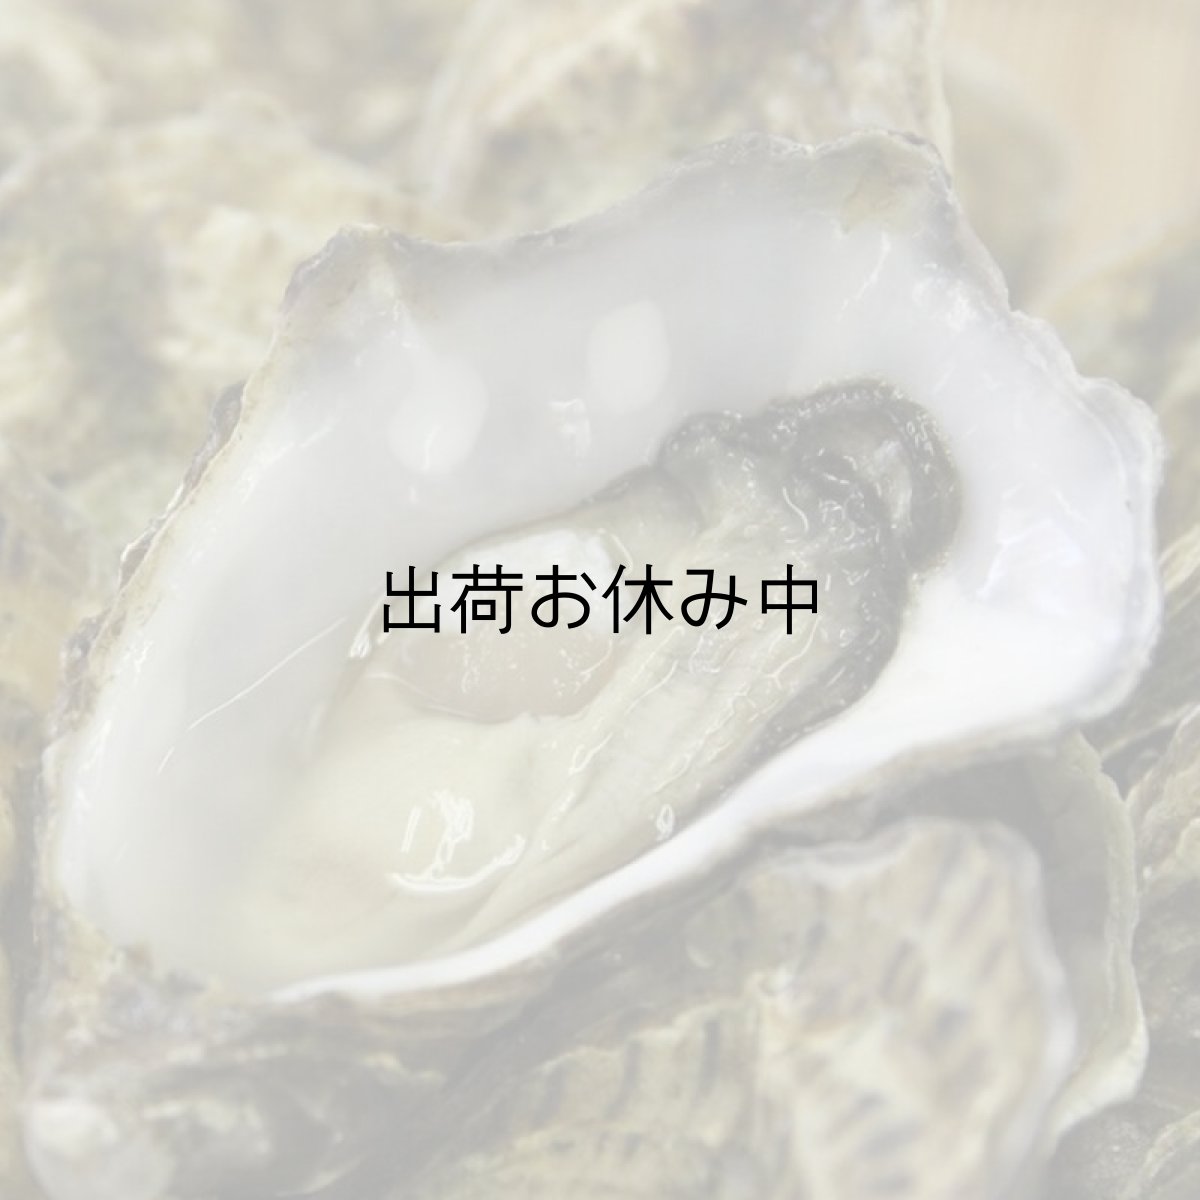 画像1: アイリッシュプレミアム殻付牡蠣 (1)